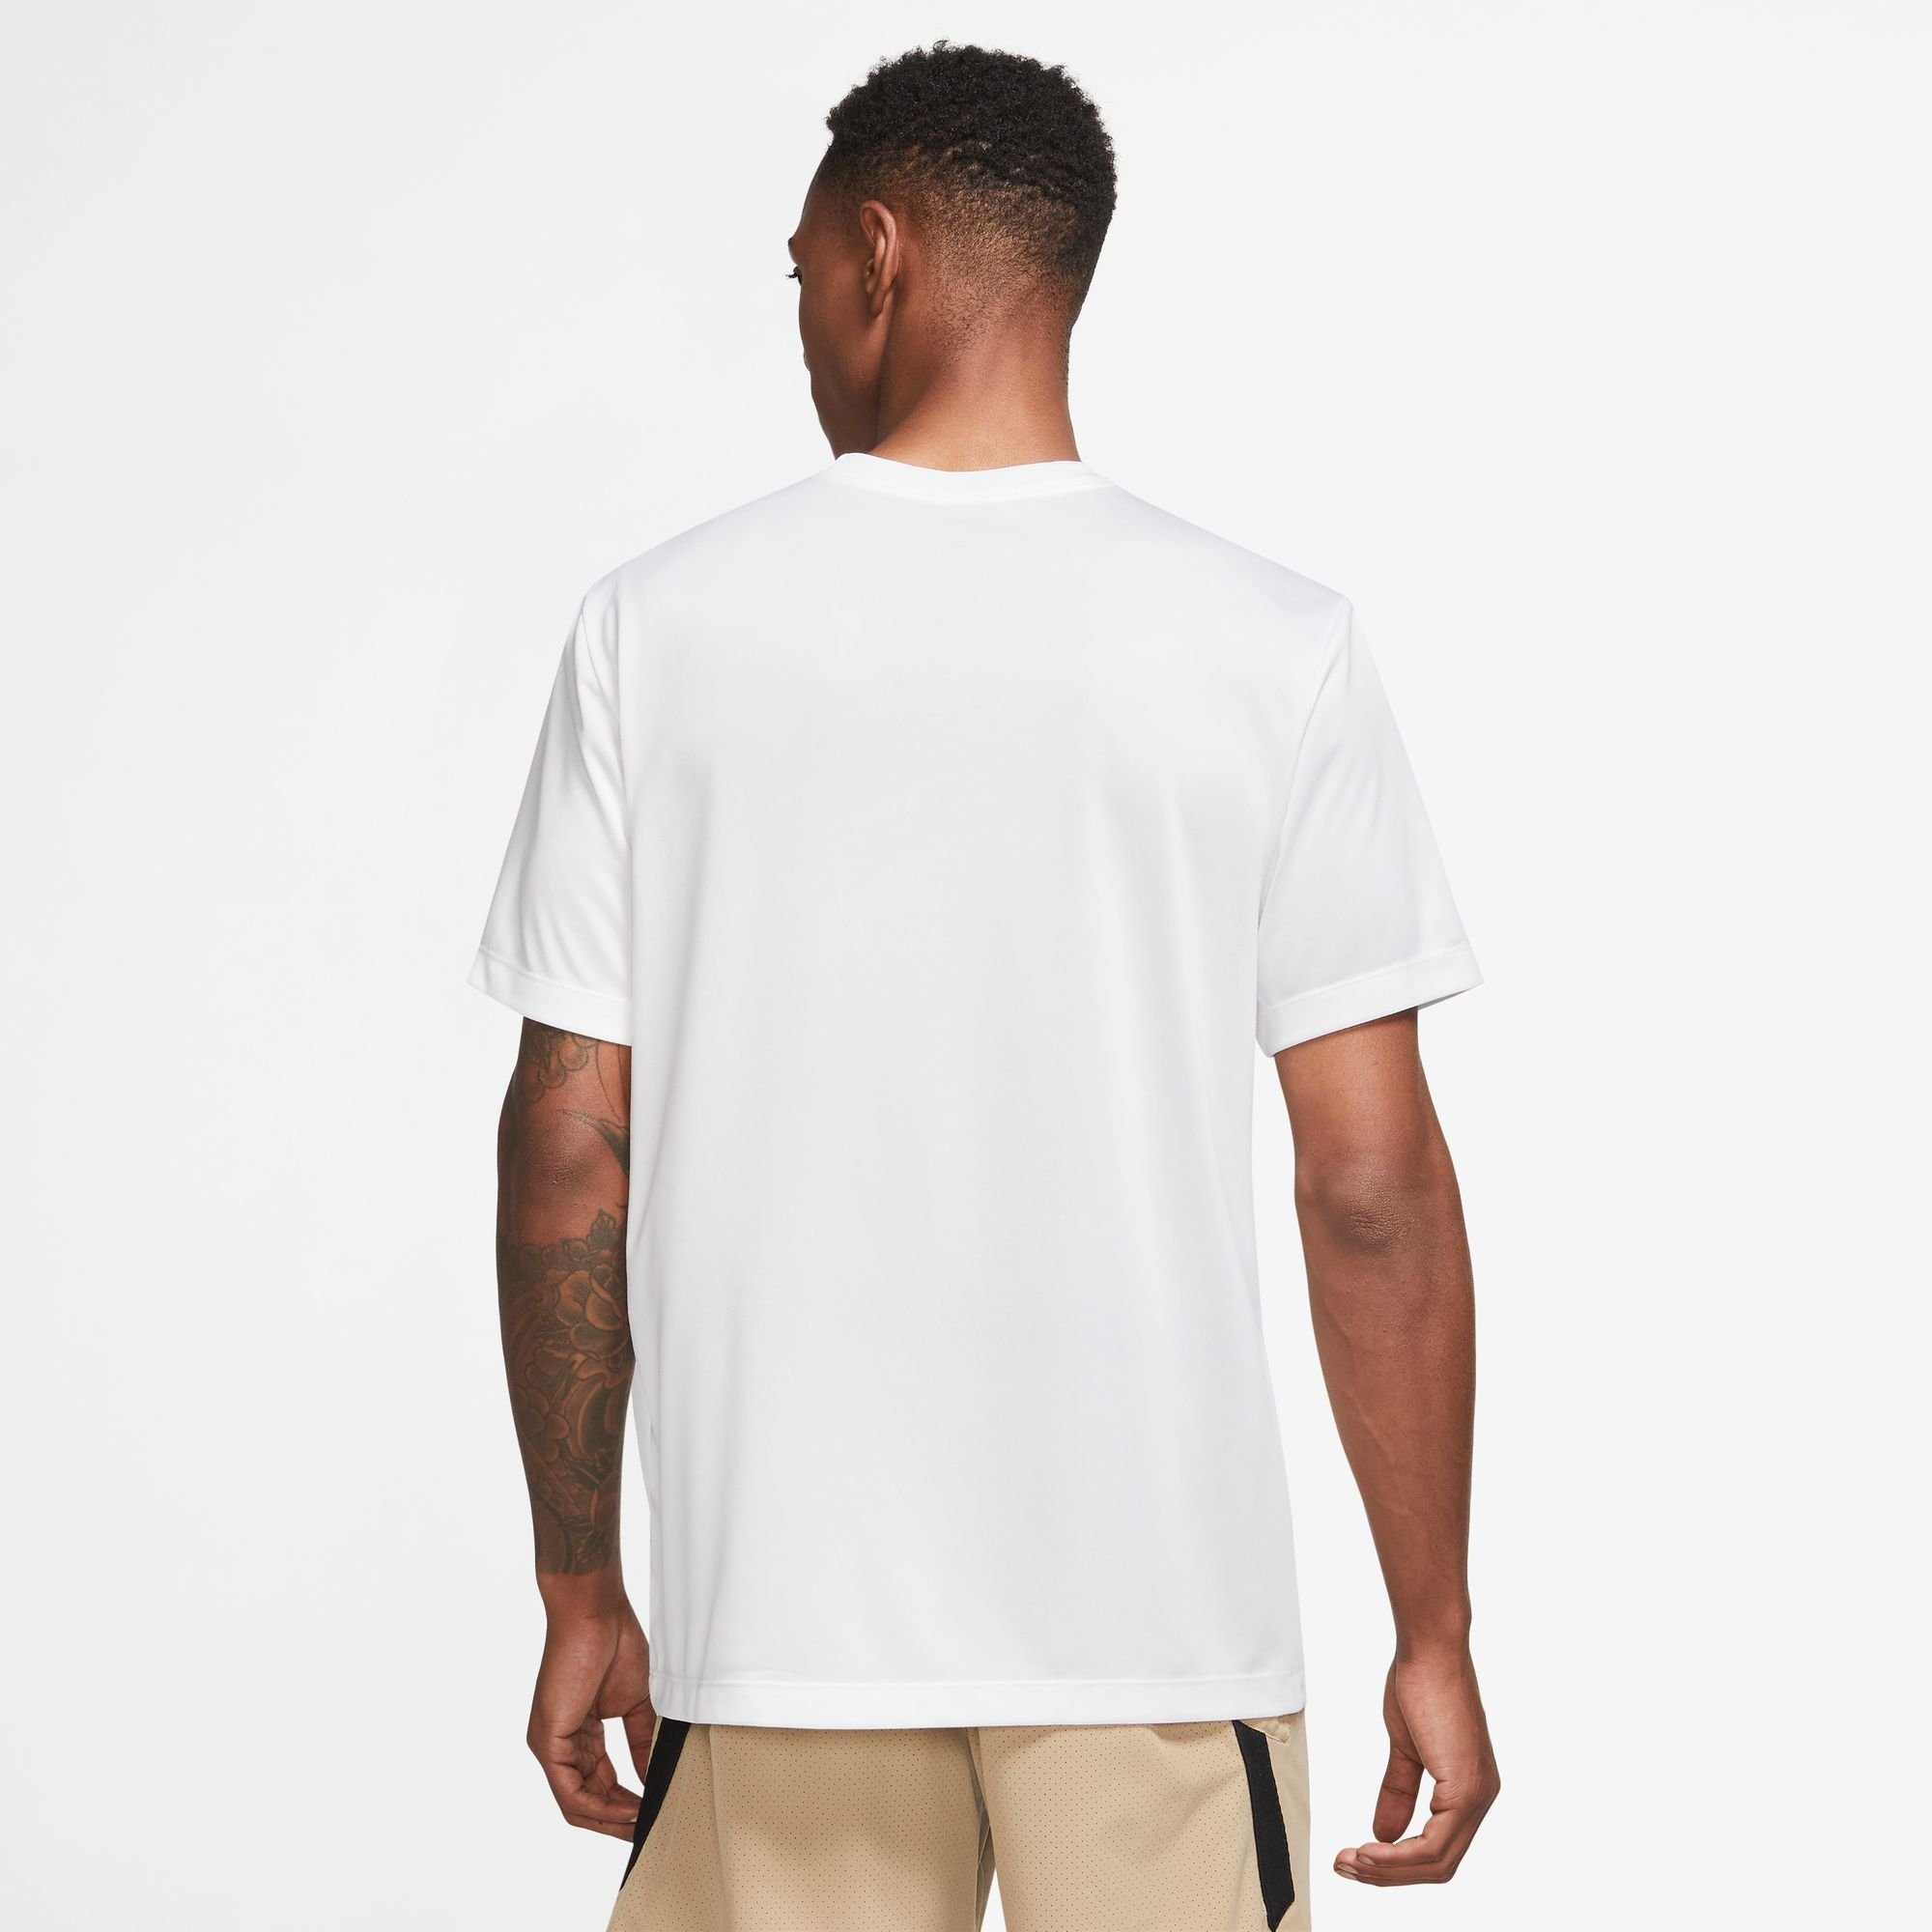 WHITE/BLACK T-SHIRT Nike MEN'S DRI-FIT LEGEND Trainingsshirt FITNESS